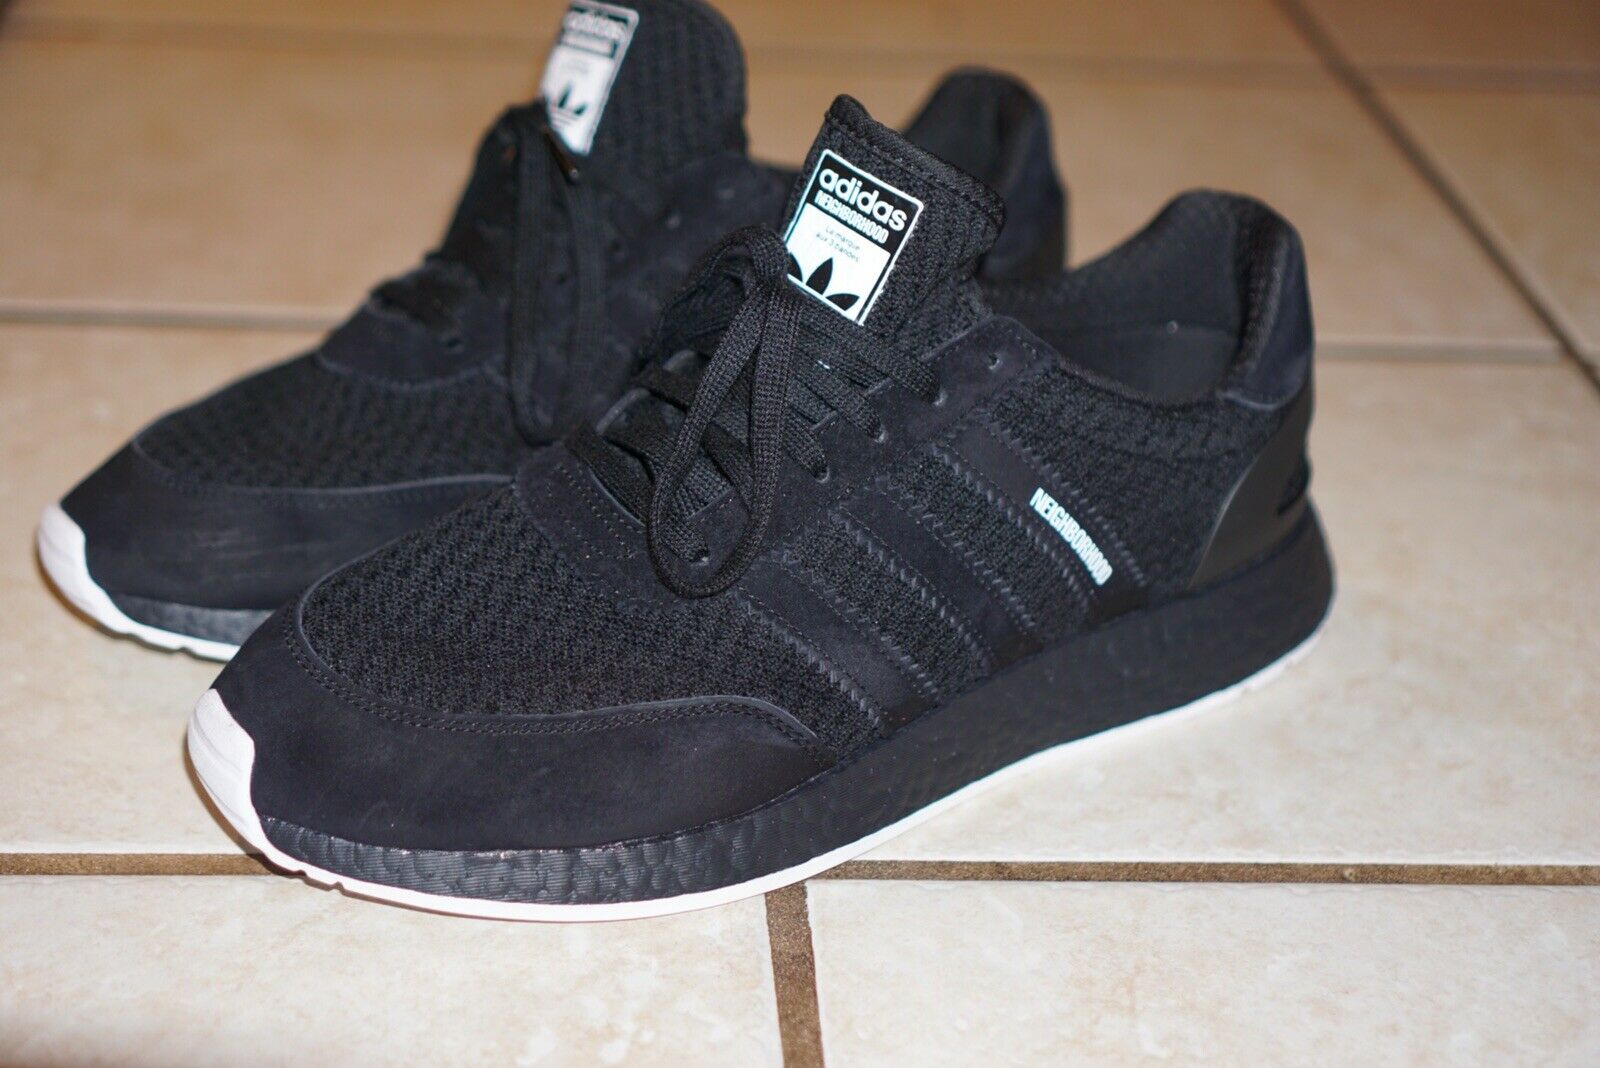 Adidas I 5923 Neighborhood Core Black